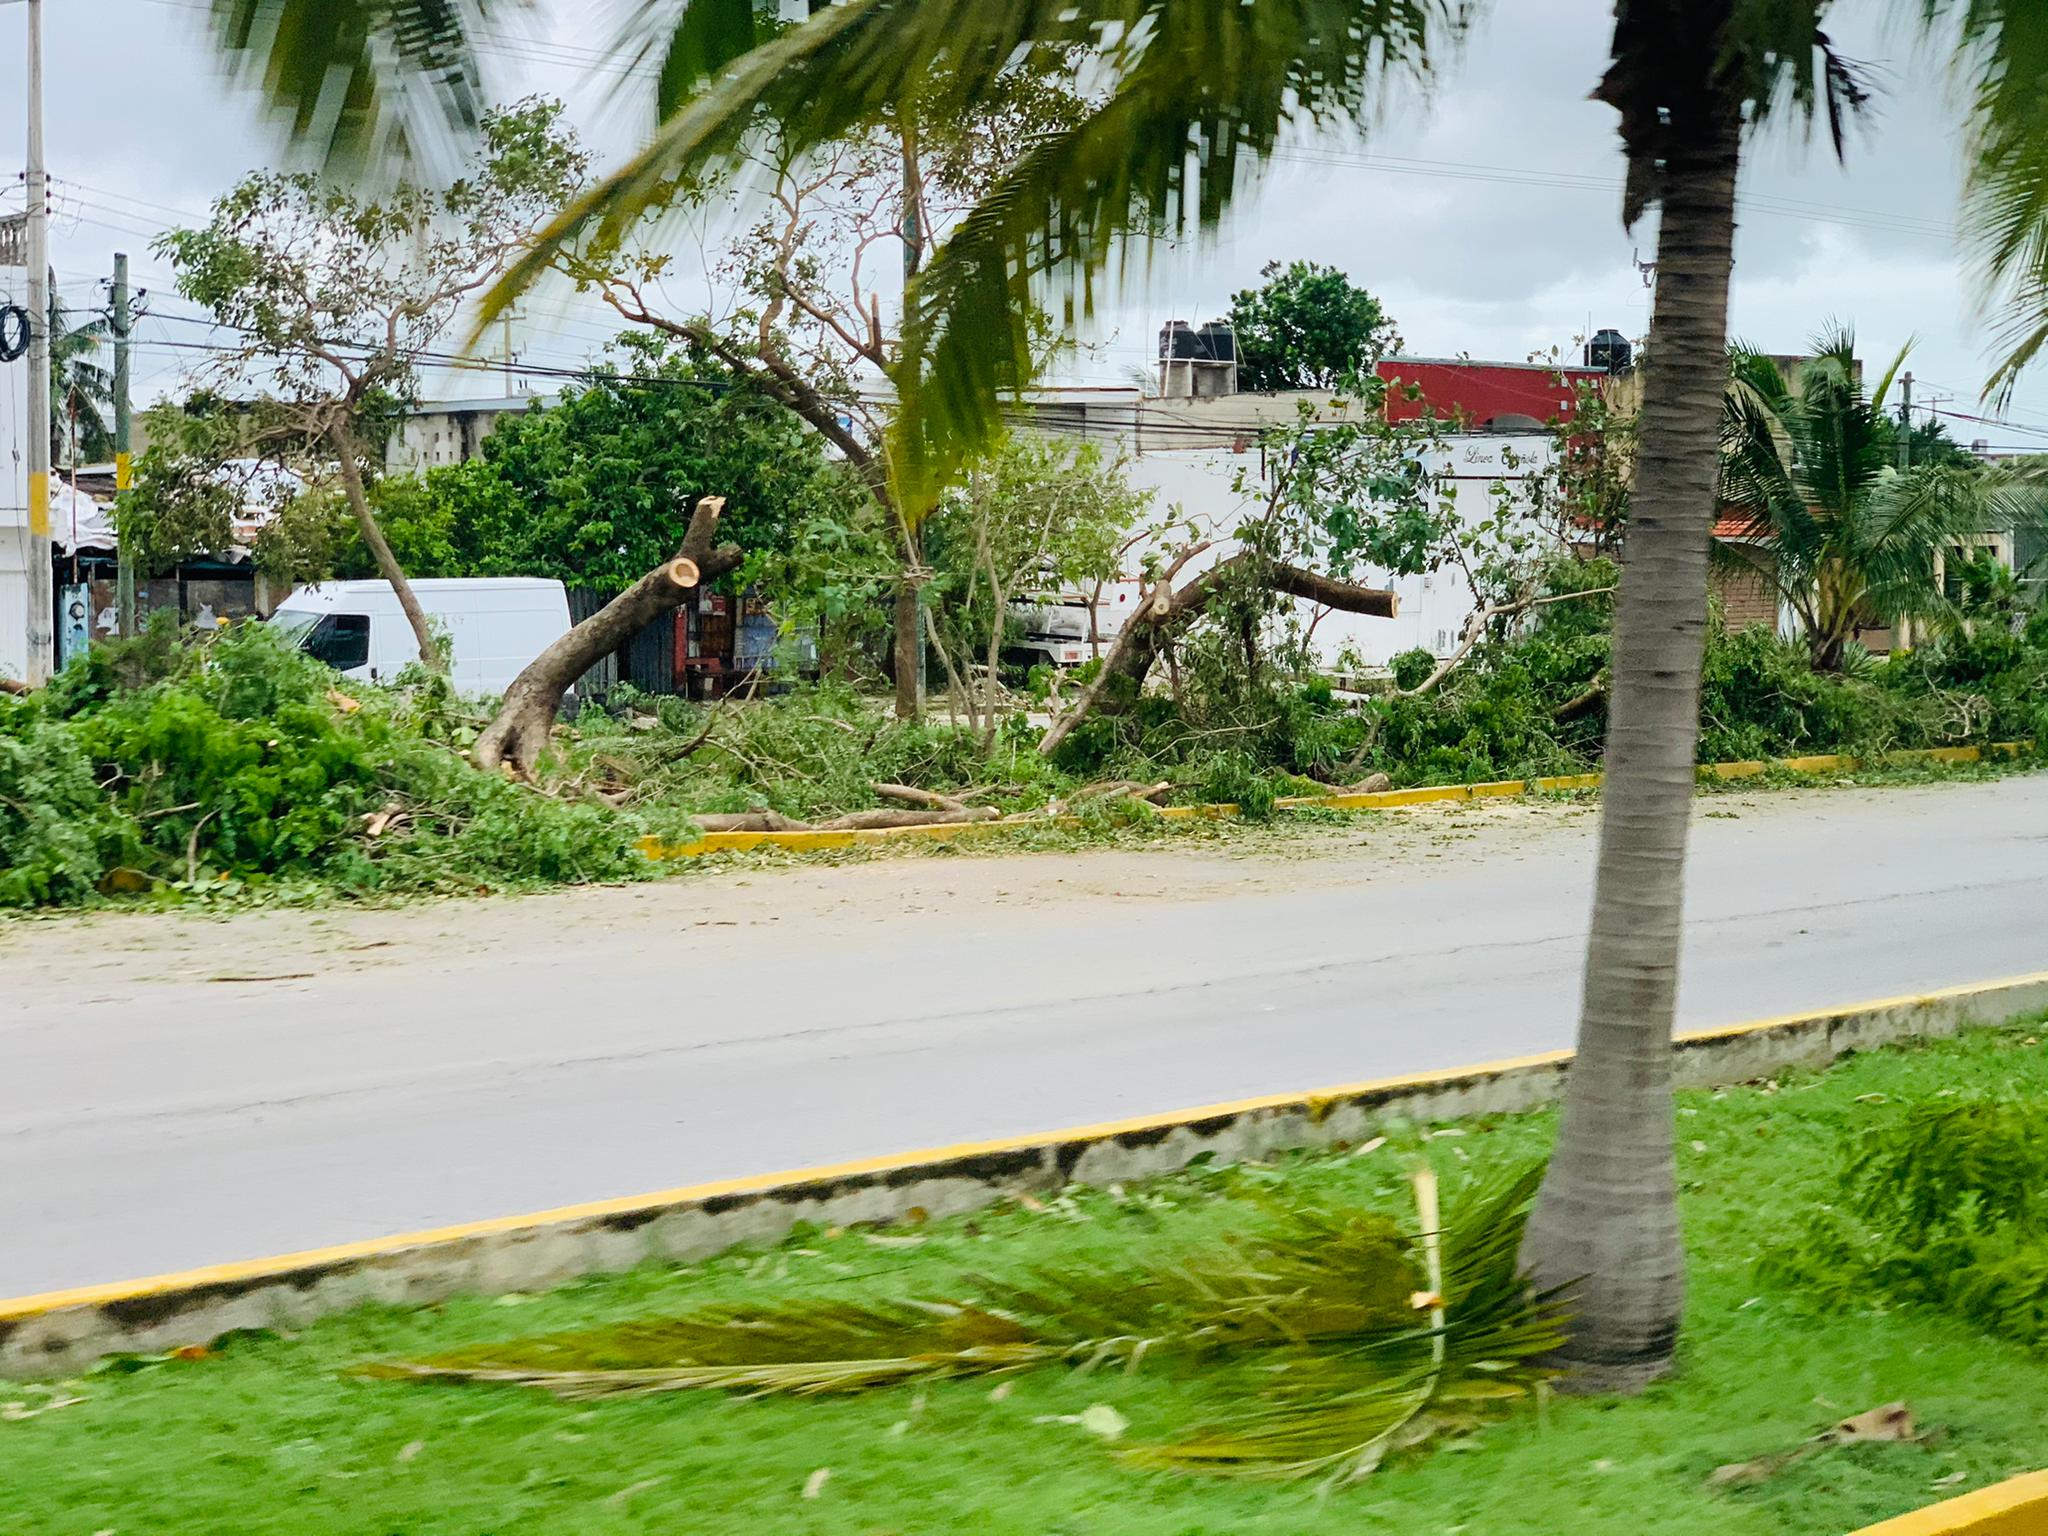 Hurrikan Delta in Cancun